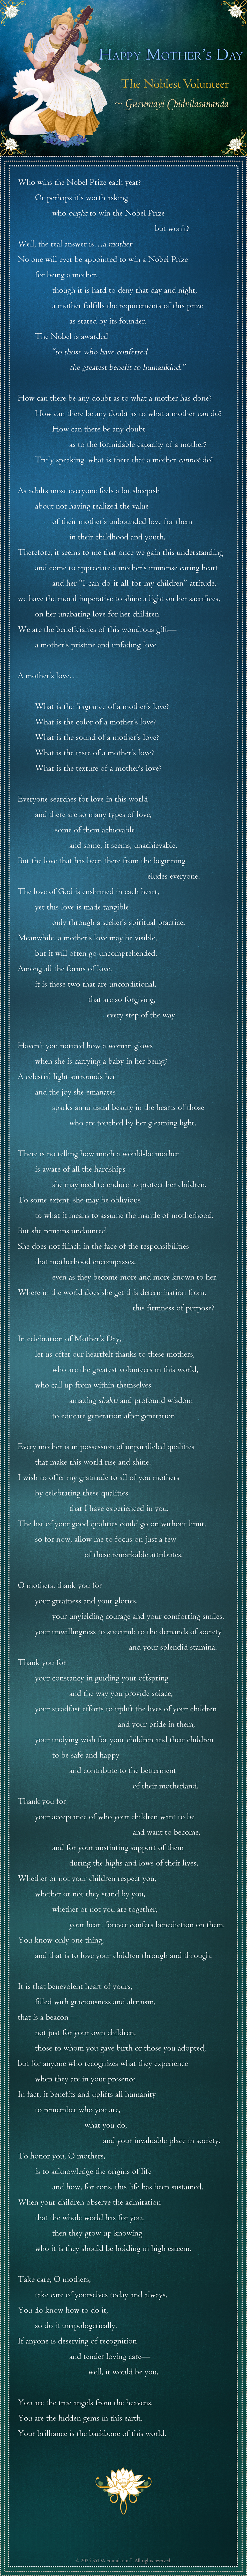 Poem by Gurumayi - The Noblest Volunteer